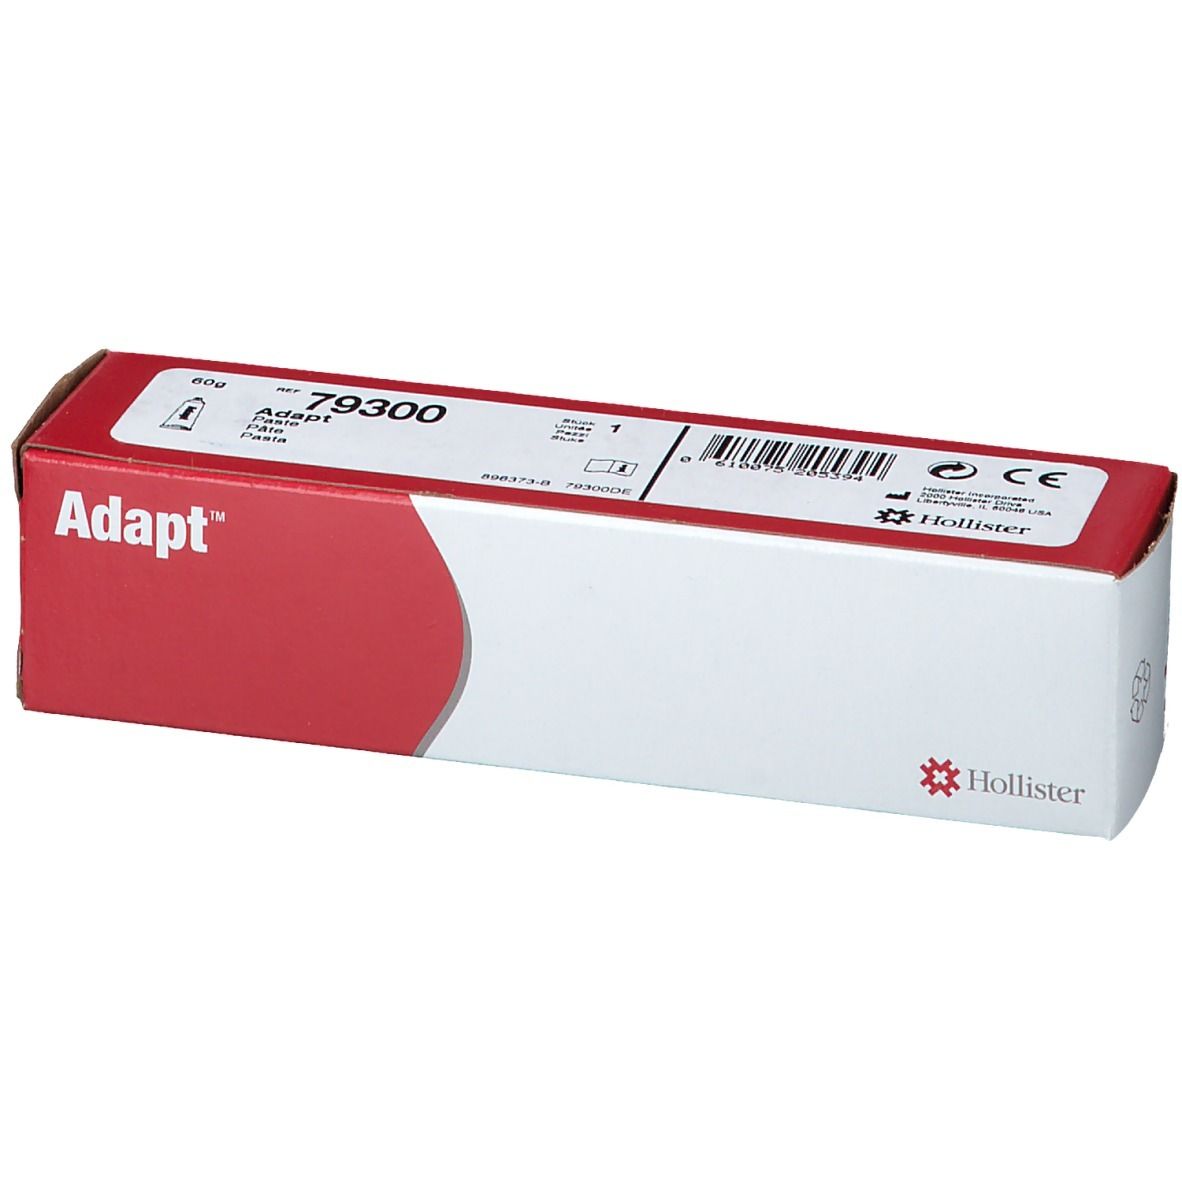 Hollister® Adapt™ 7730 medizinische Haftpaste